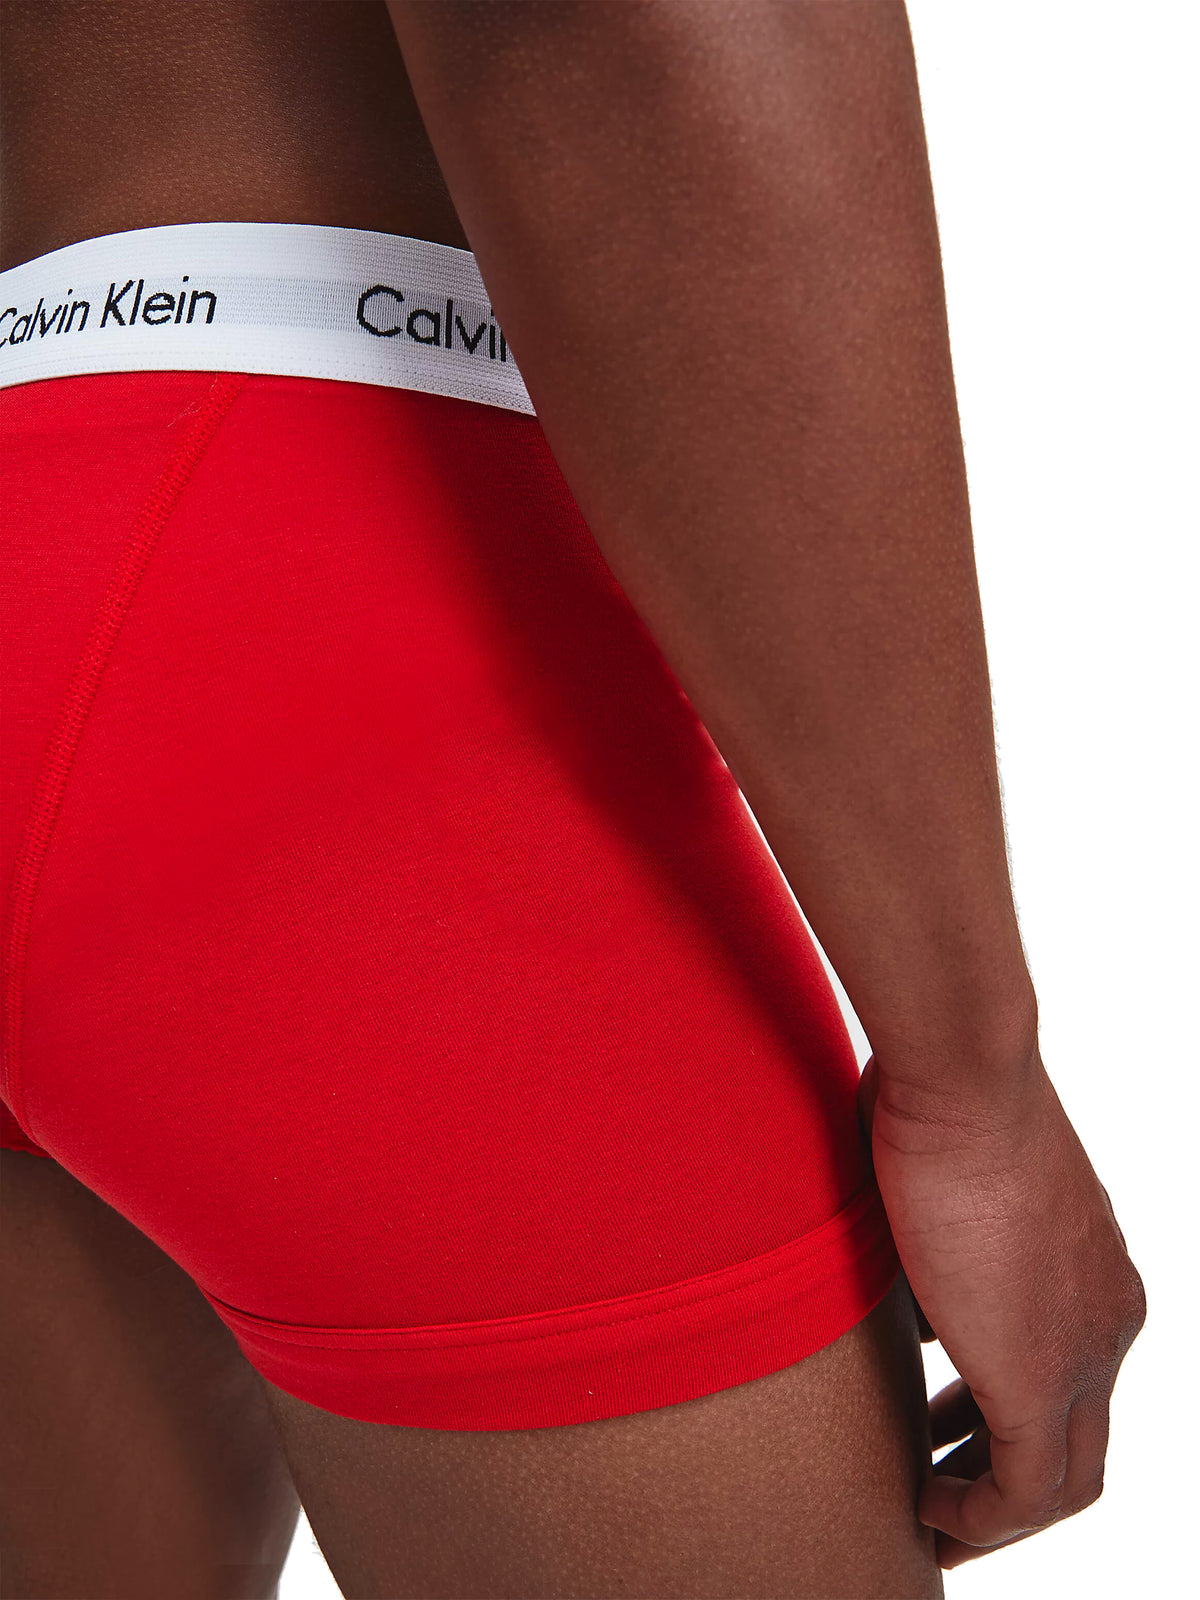 Mens Calvin Klein Boxer Shorts Trunks 3 Pack, 04, U2662G_100, Red White Blue